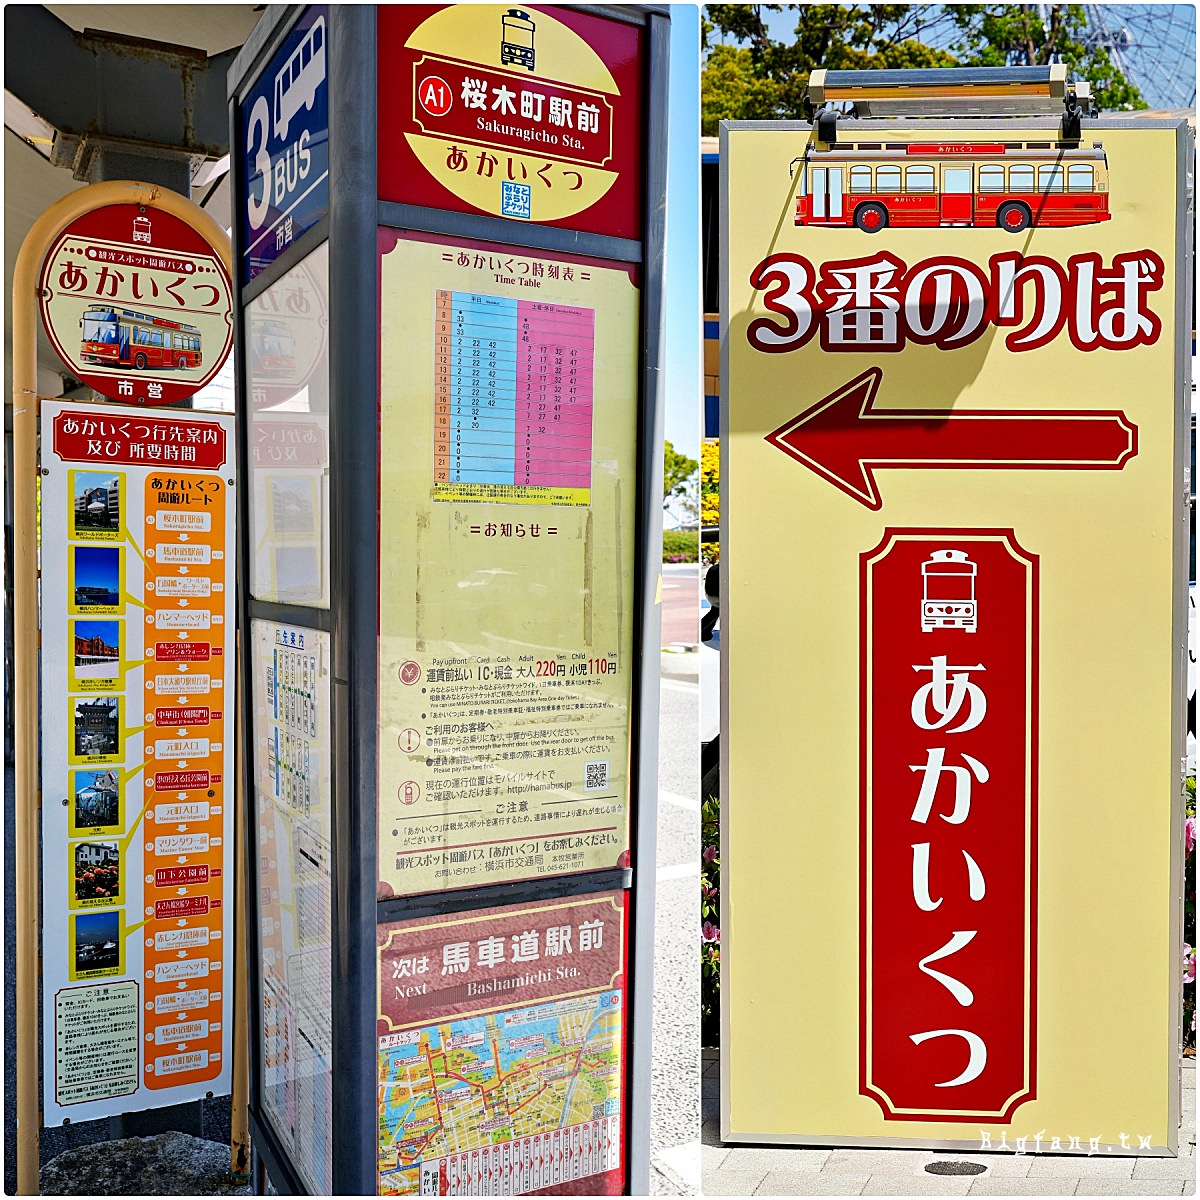 あかいくつ 紅鞋號 橫濱觀光循環巴士 櫻木駅站牌